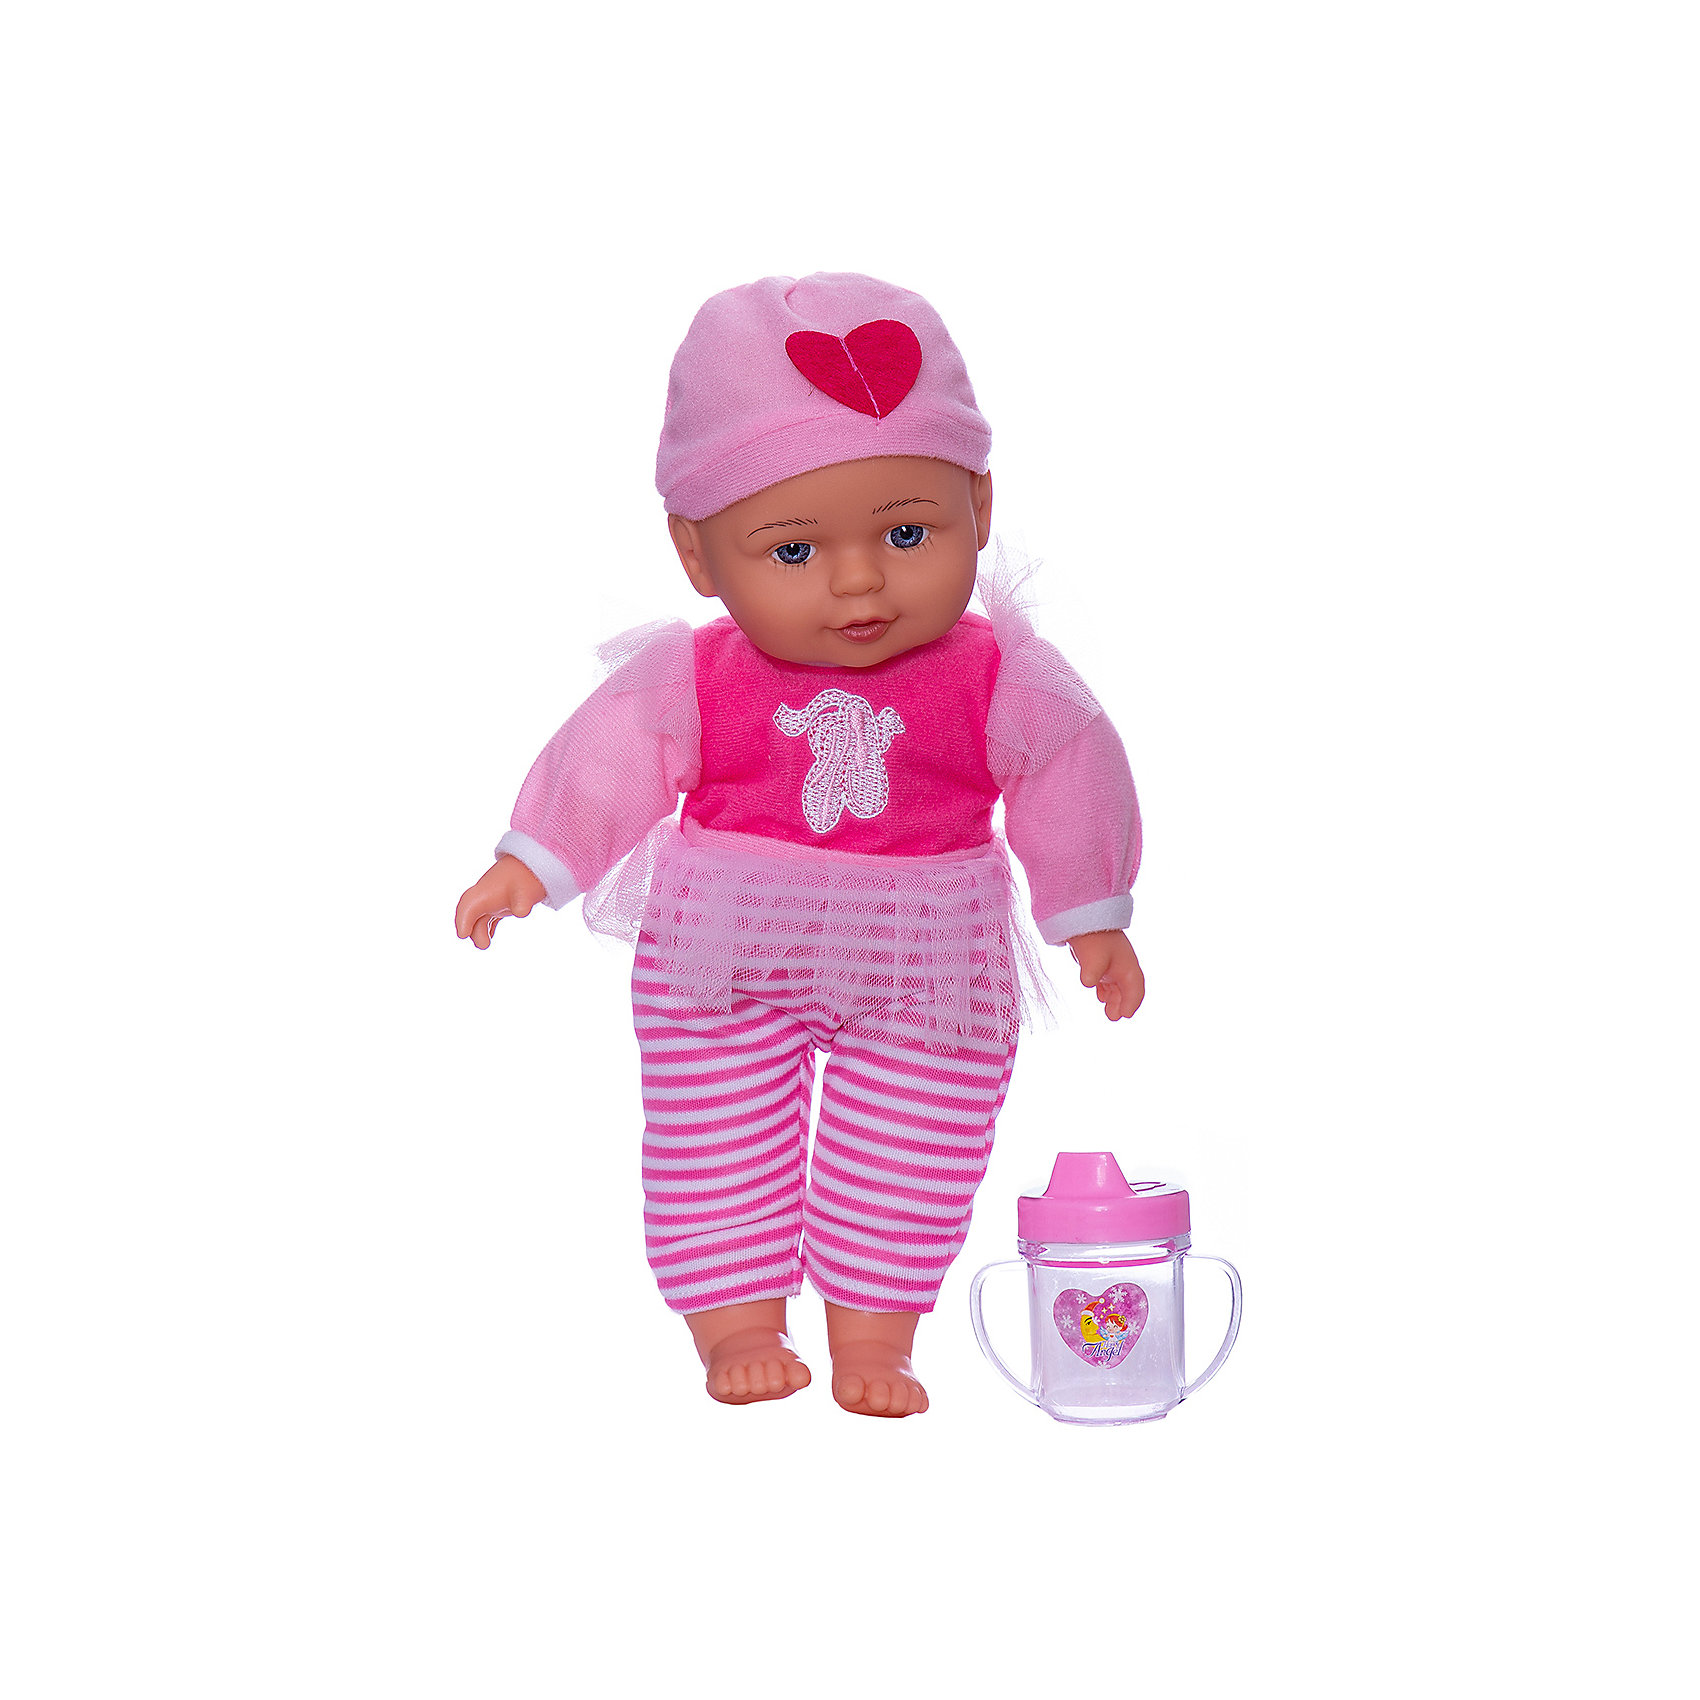 Кукла Baby boutique, 33 см, с аксессуарами ABtoys 10208161